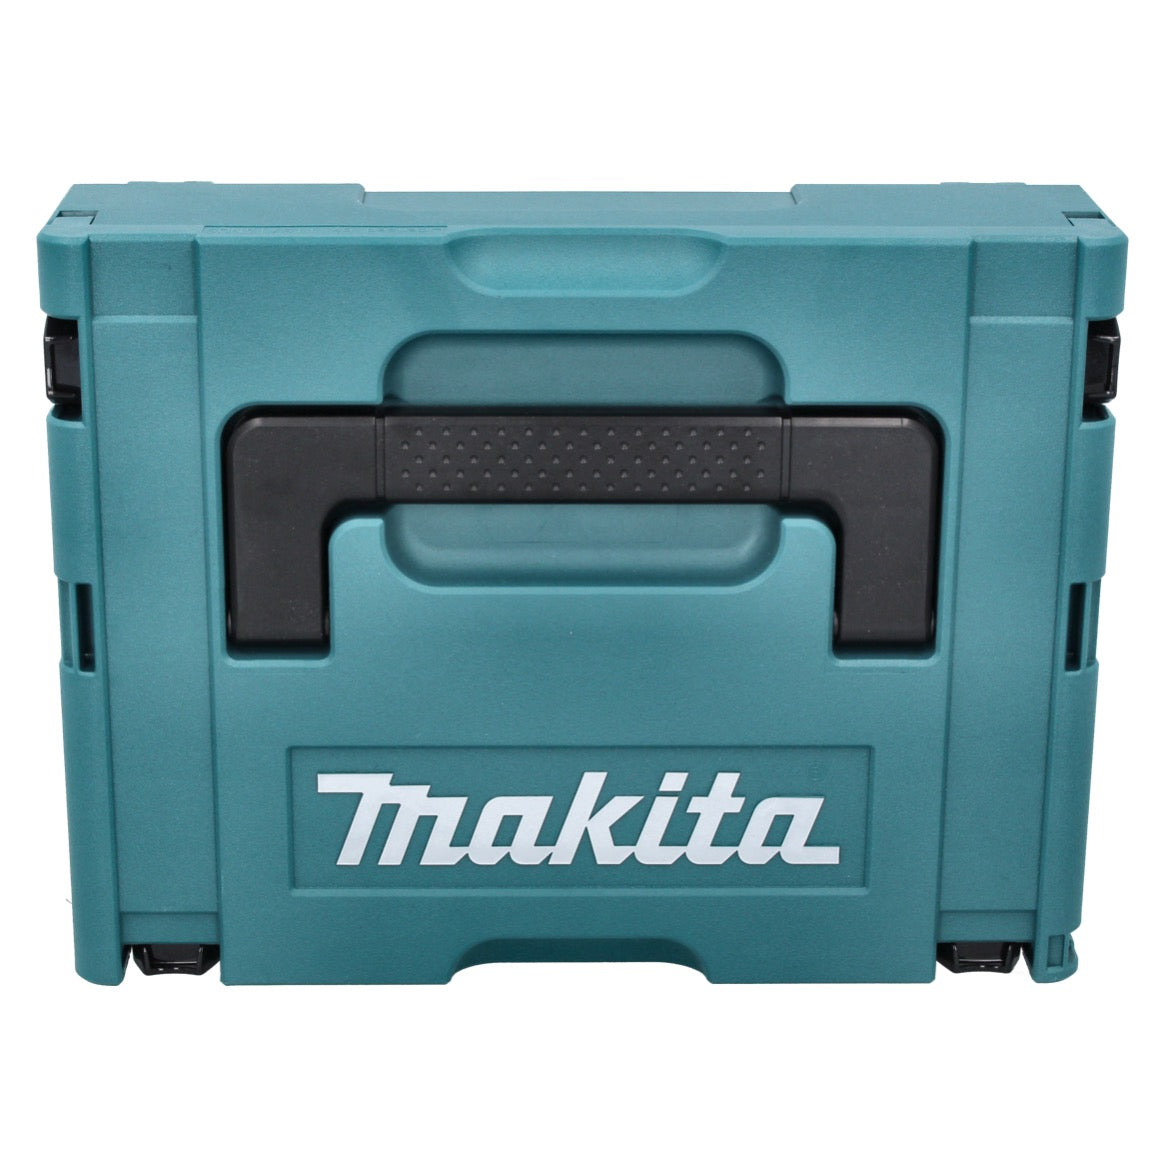 Makita 4351 FCTJ Pendelhubstichsäge 720W + 6 tlg. Sägeblattset + Makpac - Toolbrothers